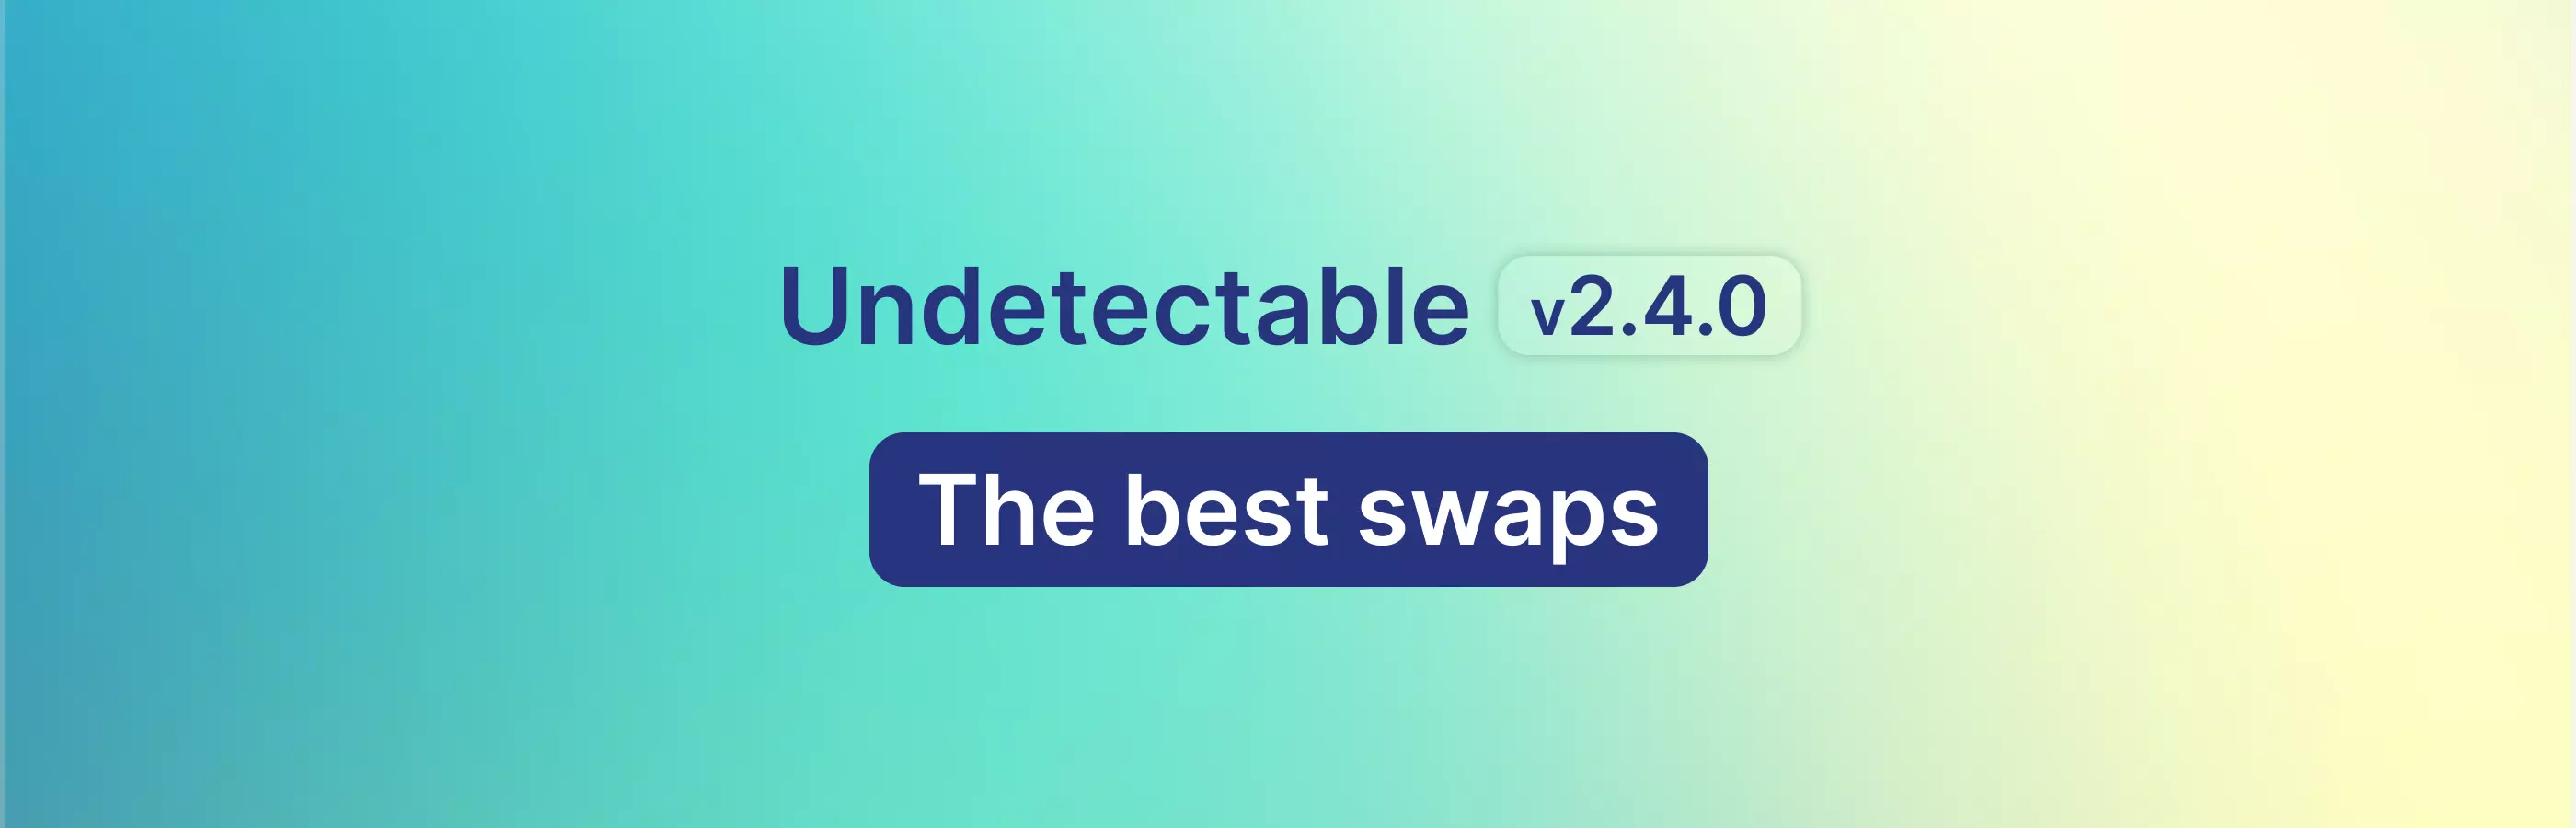 Обновление Undetectable 2.4.0 - Лучшие подмены